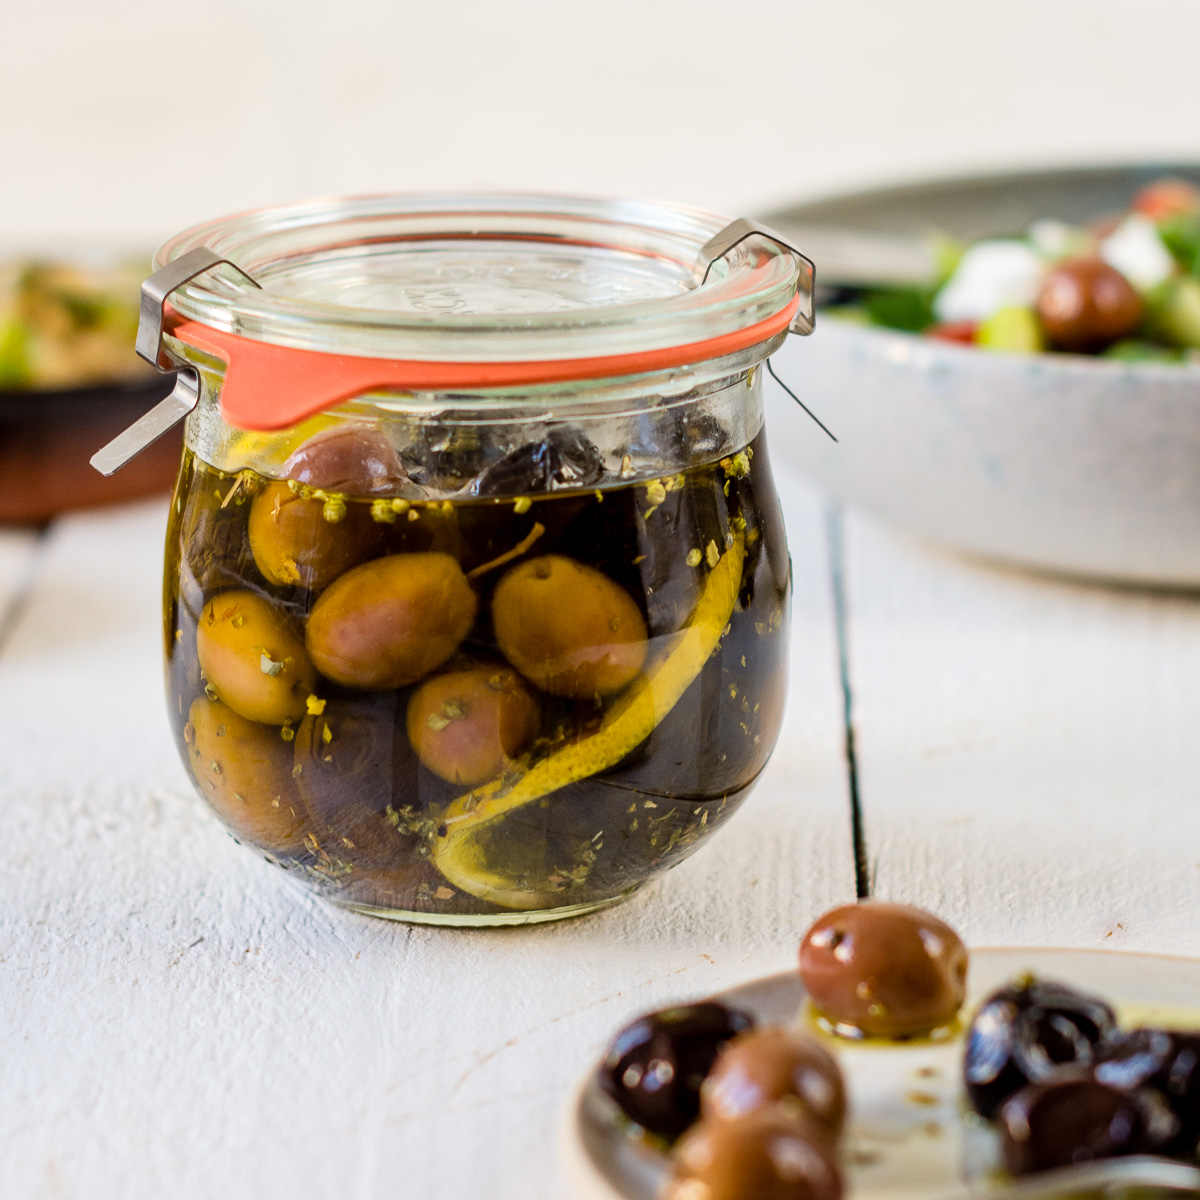 Oliven selber einlegen – Rezept mit Zitrone und Oregano